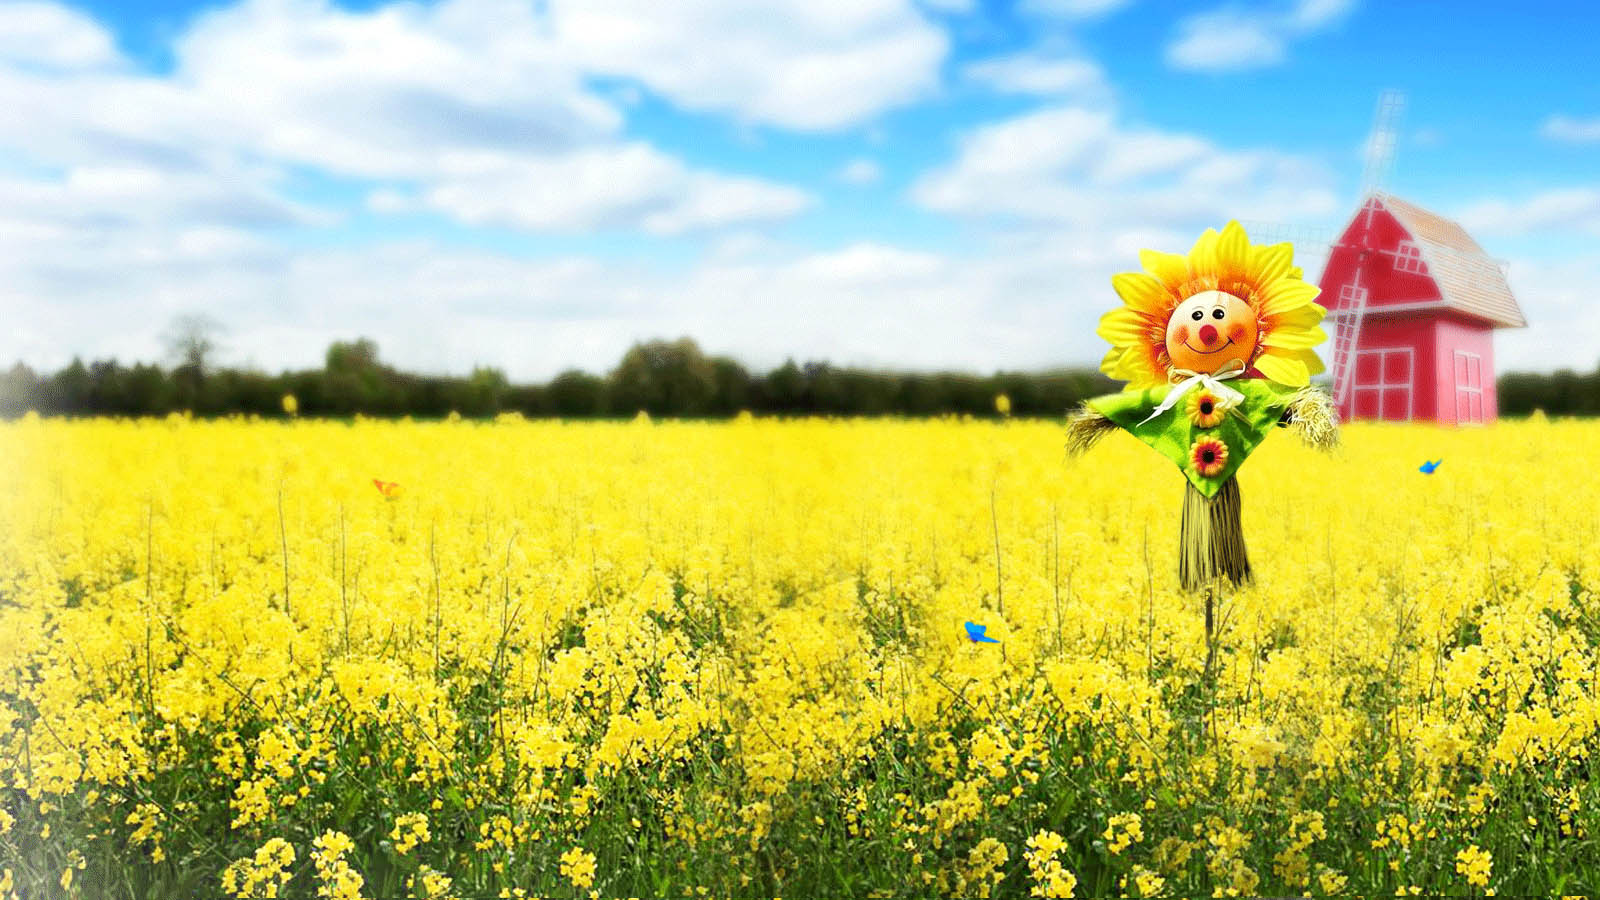 Smiling sunflower desktop wallpaper